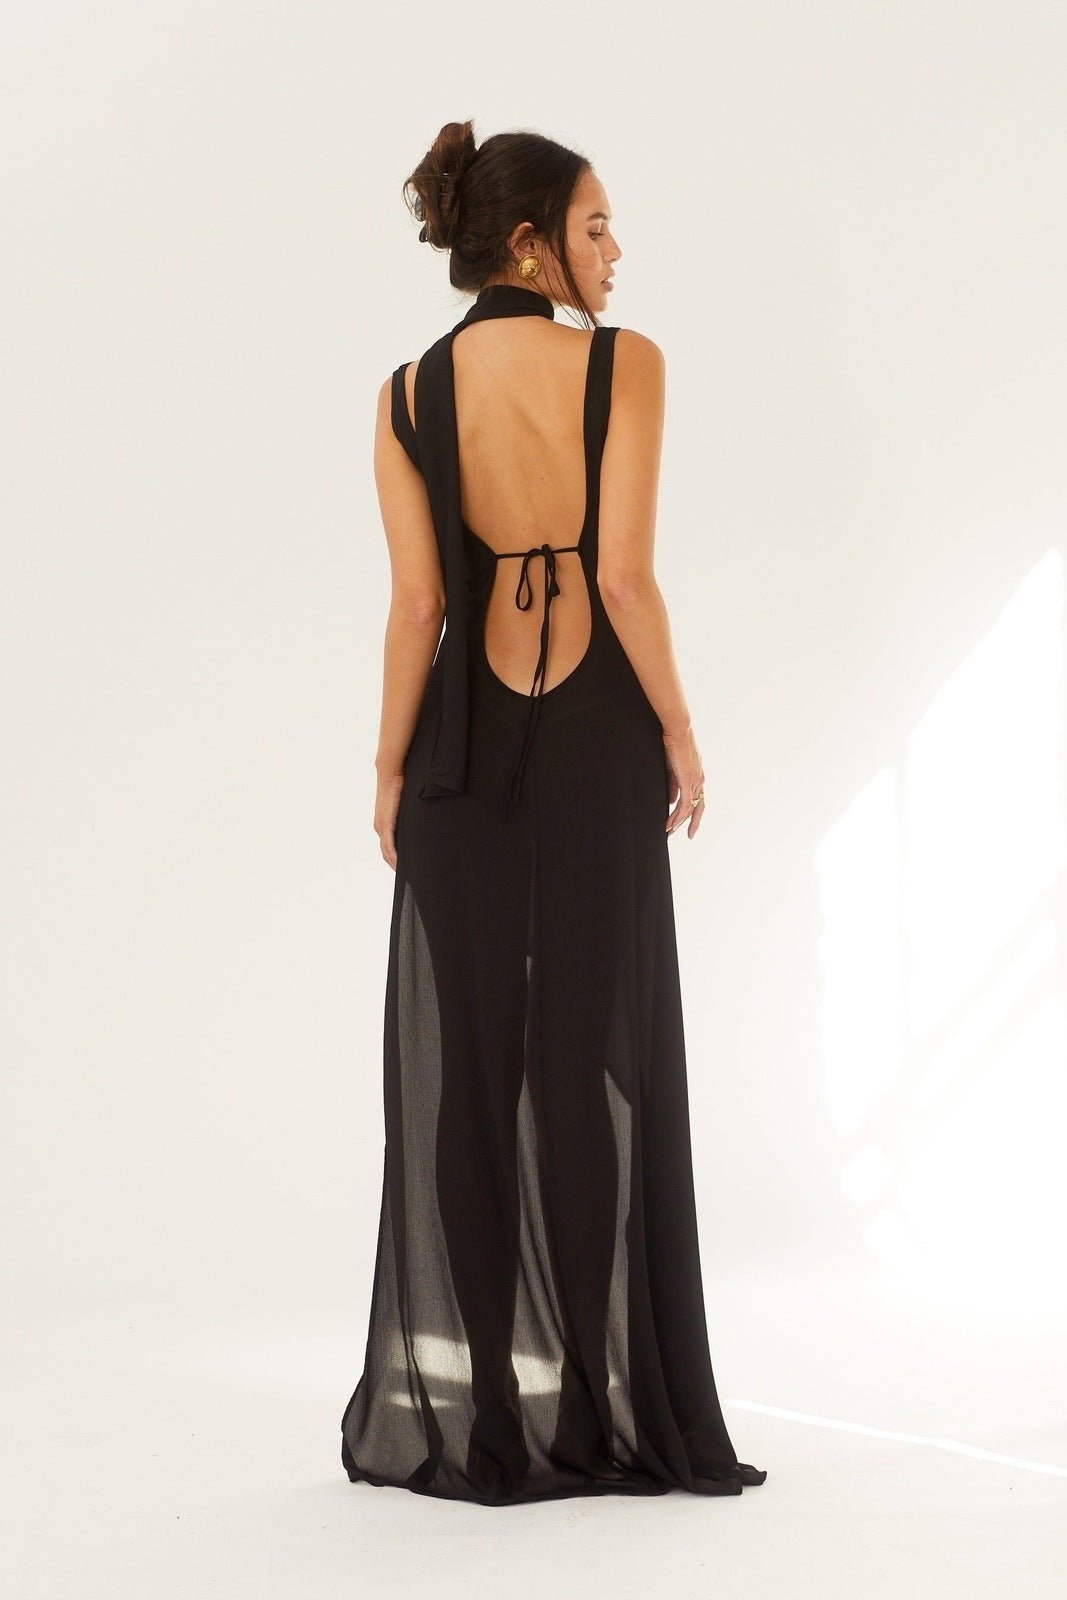 Apphia V-neck Backless Slit Maxi Dress